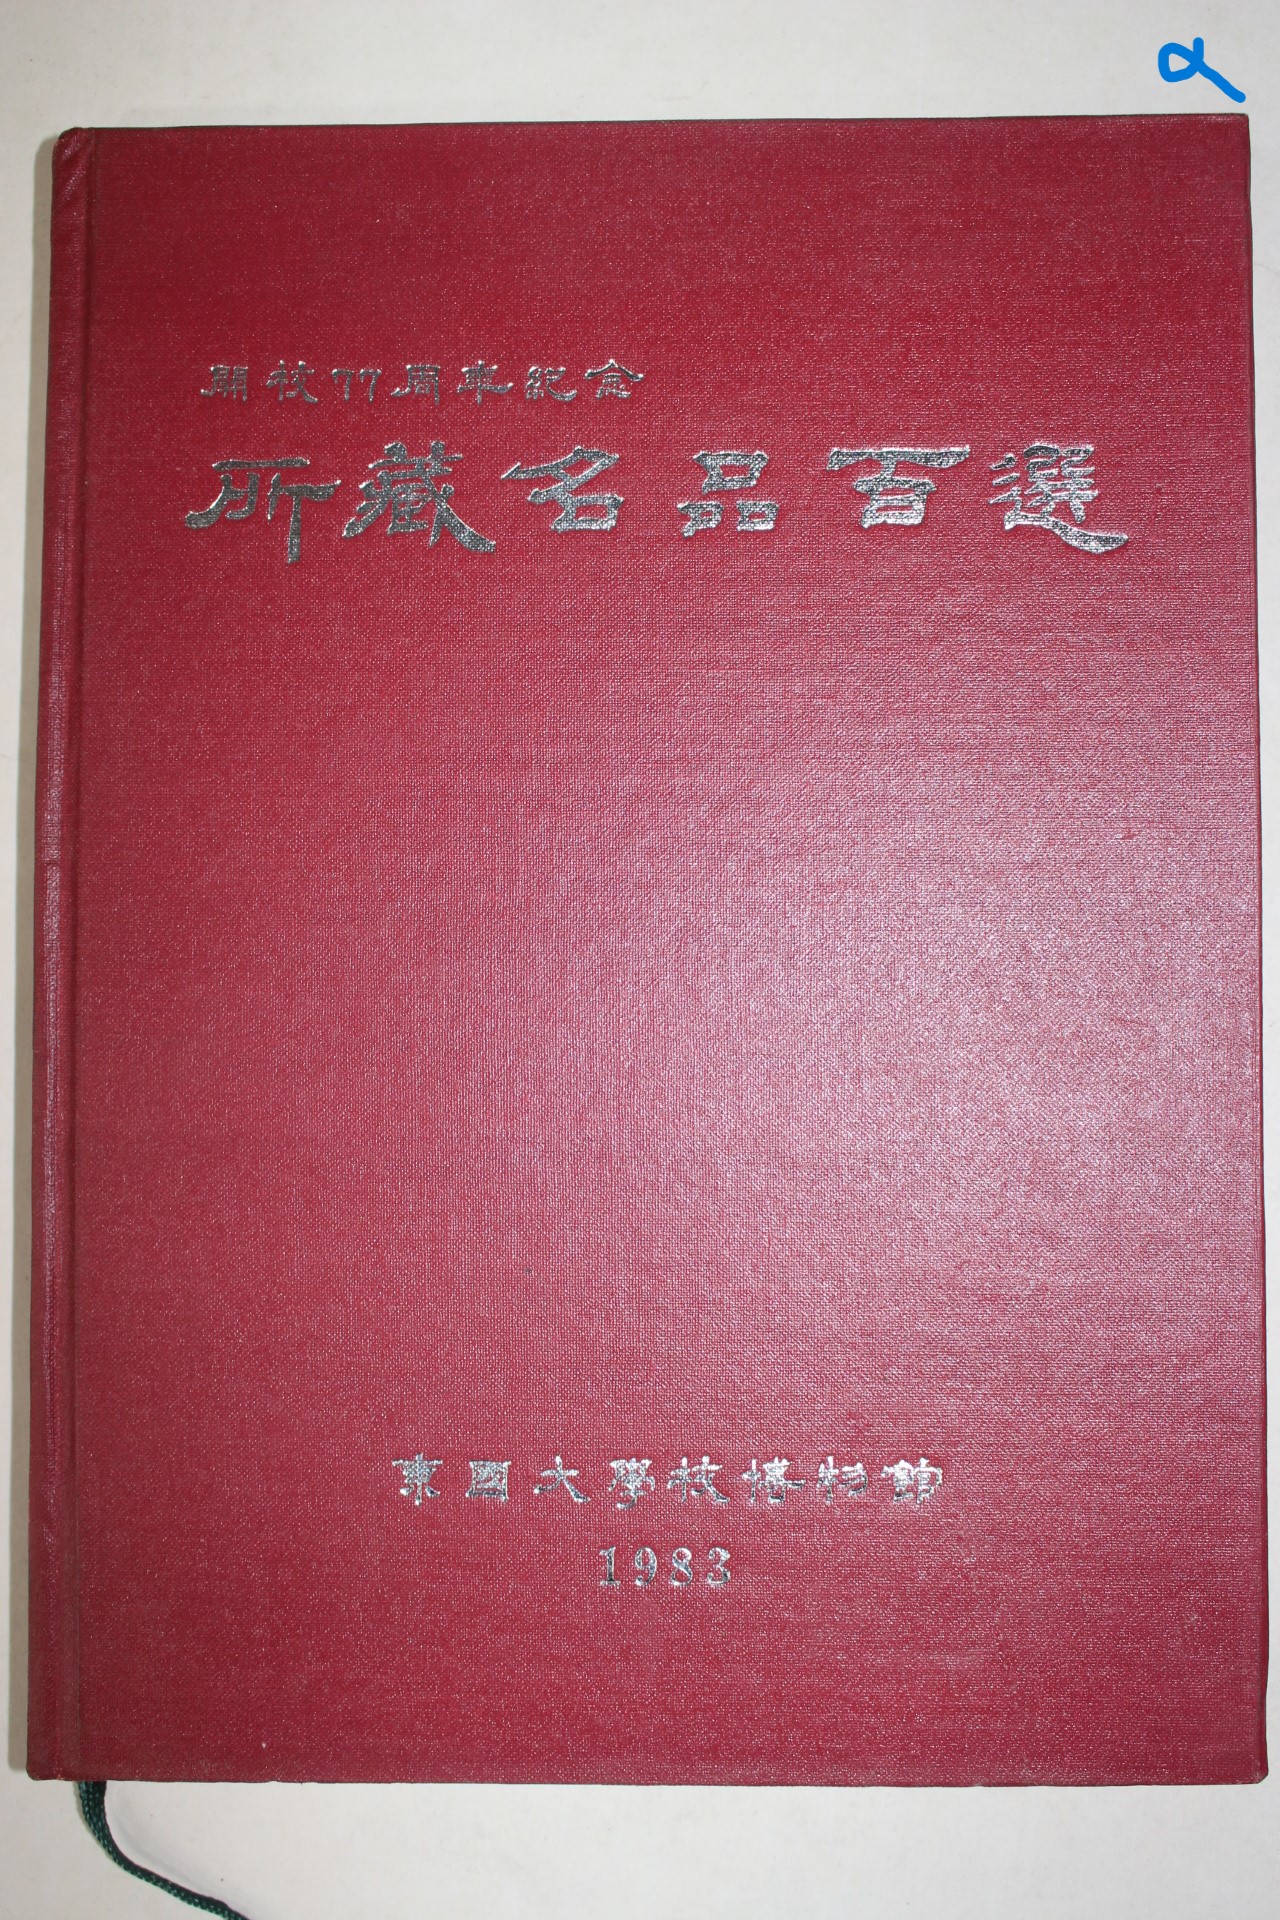 1983년 동국대학교박물관 소장명품백선 도록